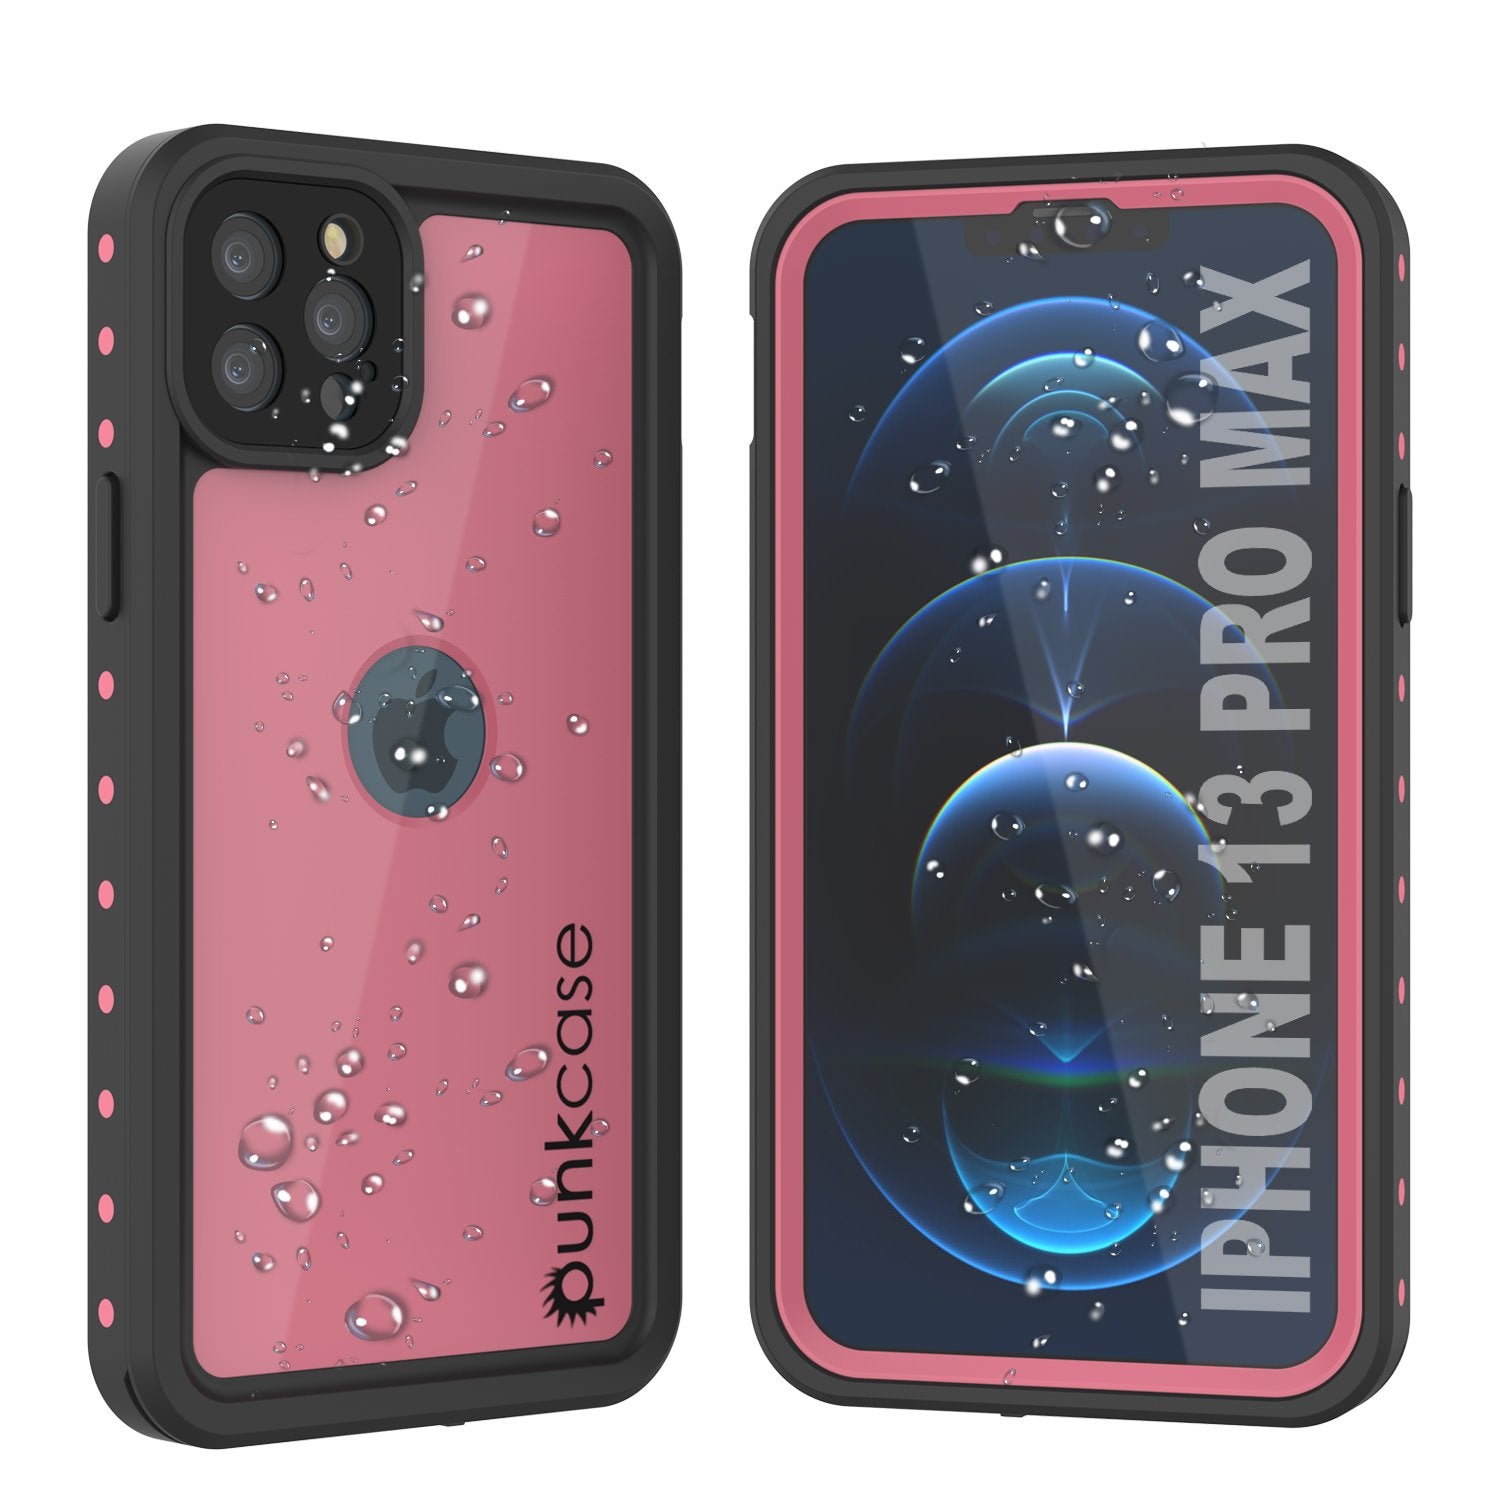 iPhone 13 Pro Max Waterproof IP68 Case, Punkcase [Pink] [StudStar Series] [Slim Fit] [Dirtproof] (Color in image: Pink)